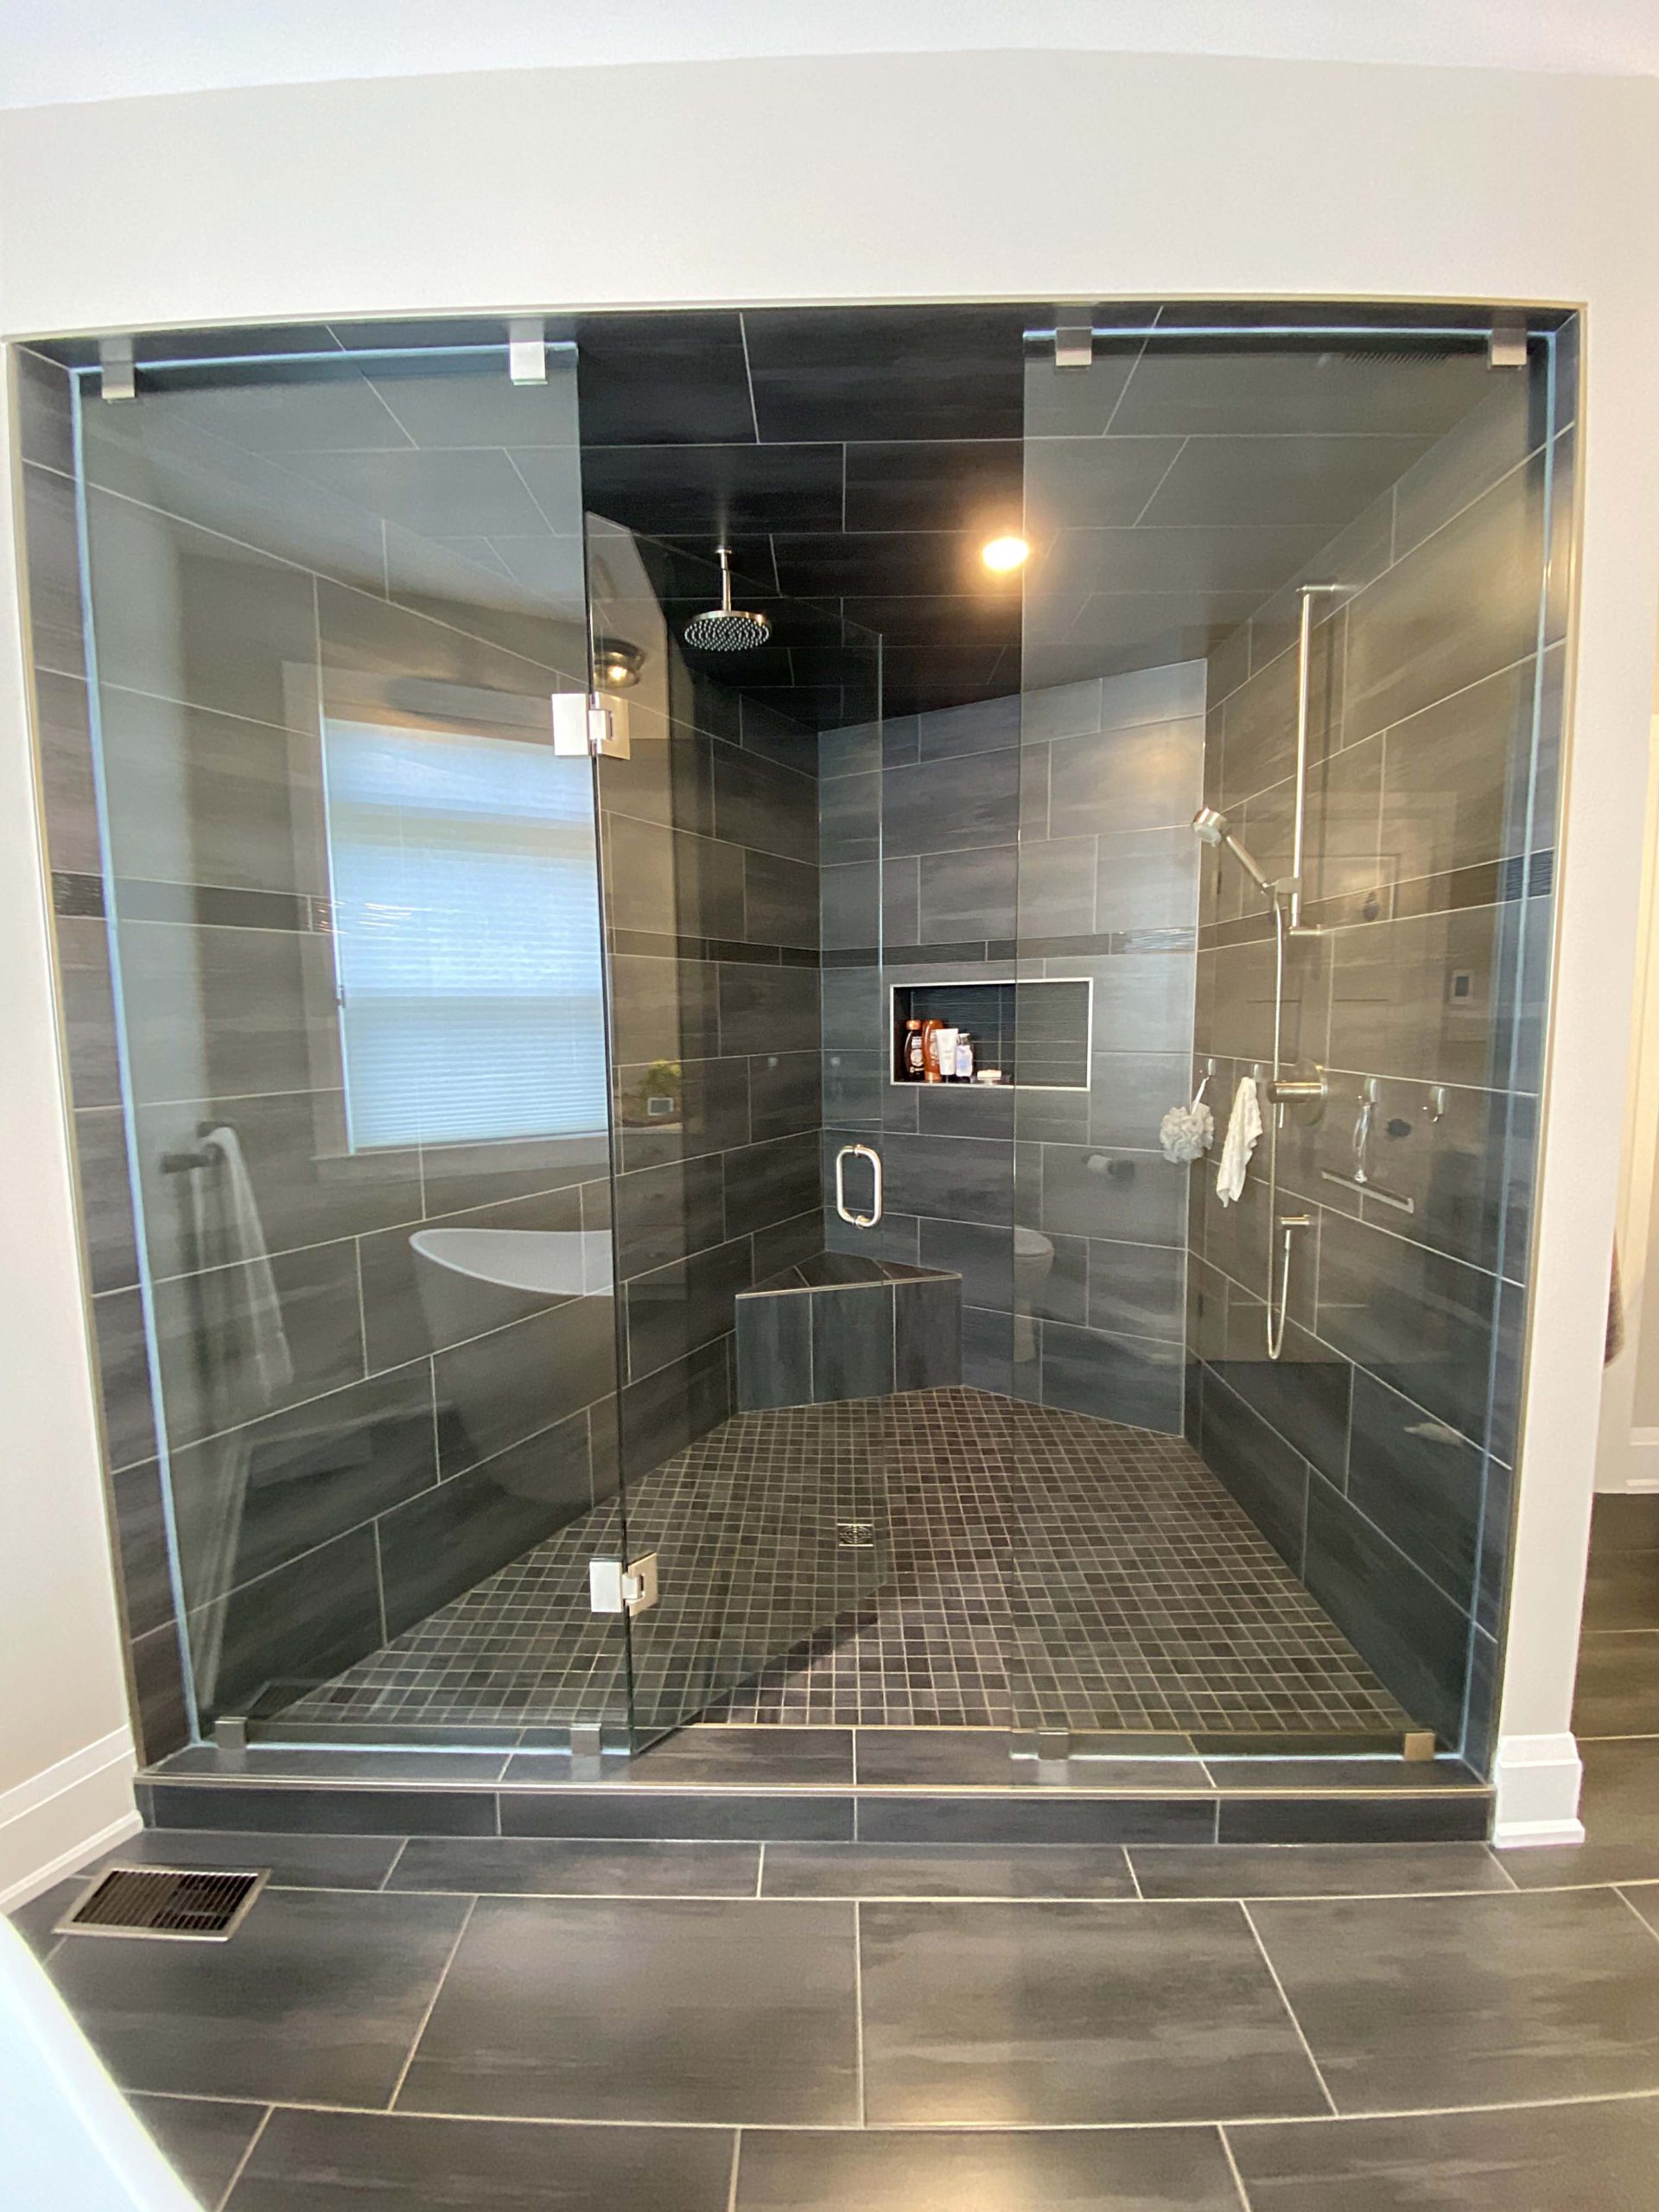 Kitchen _ Baths - Large Walk-In Shower With Niche